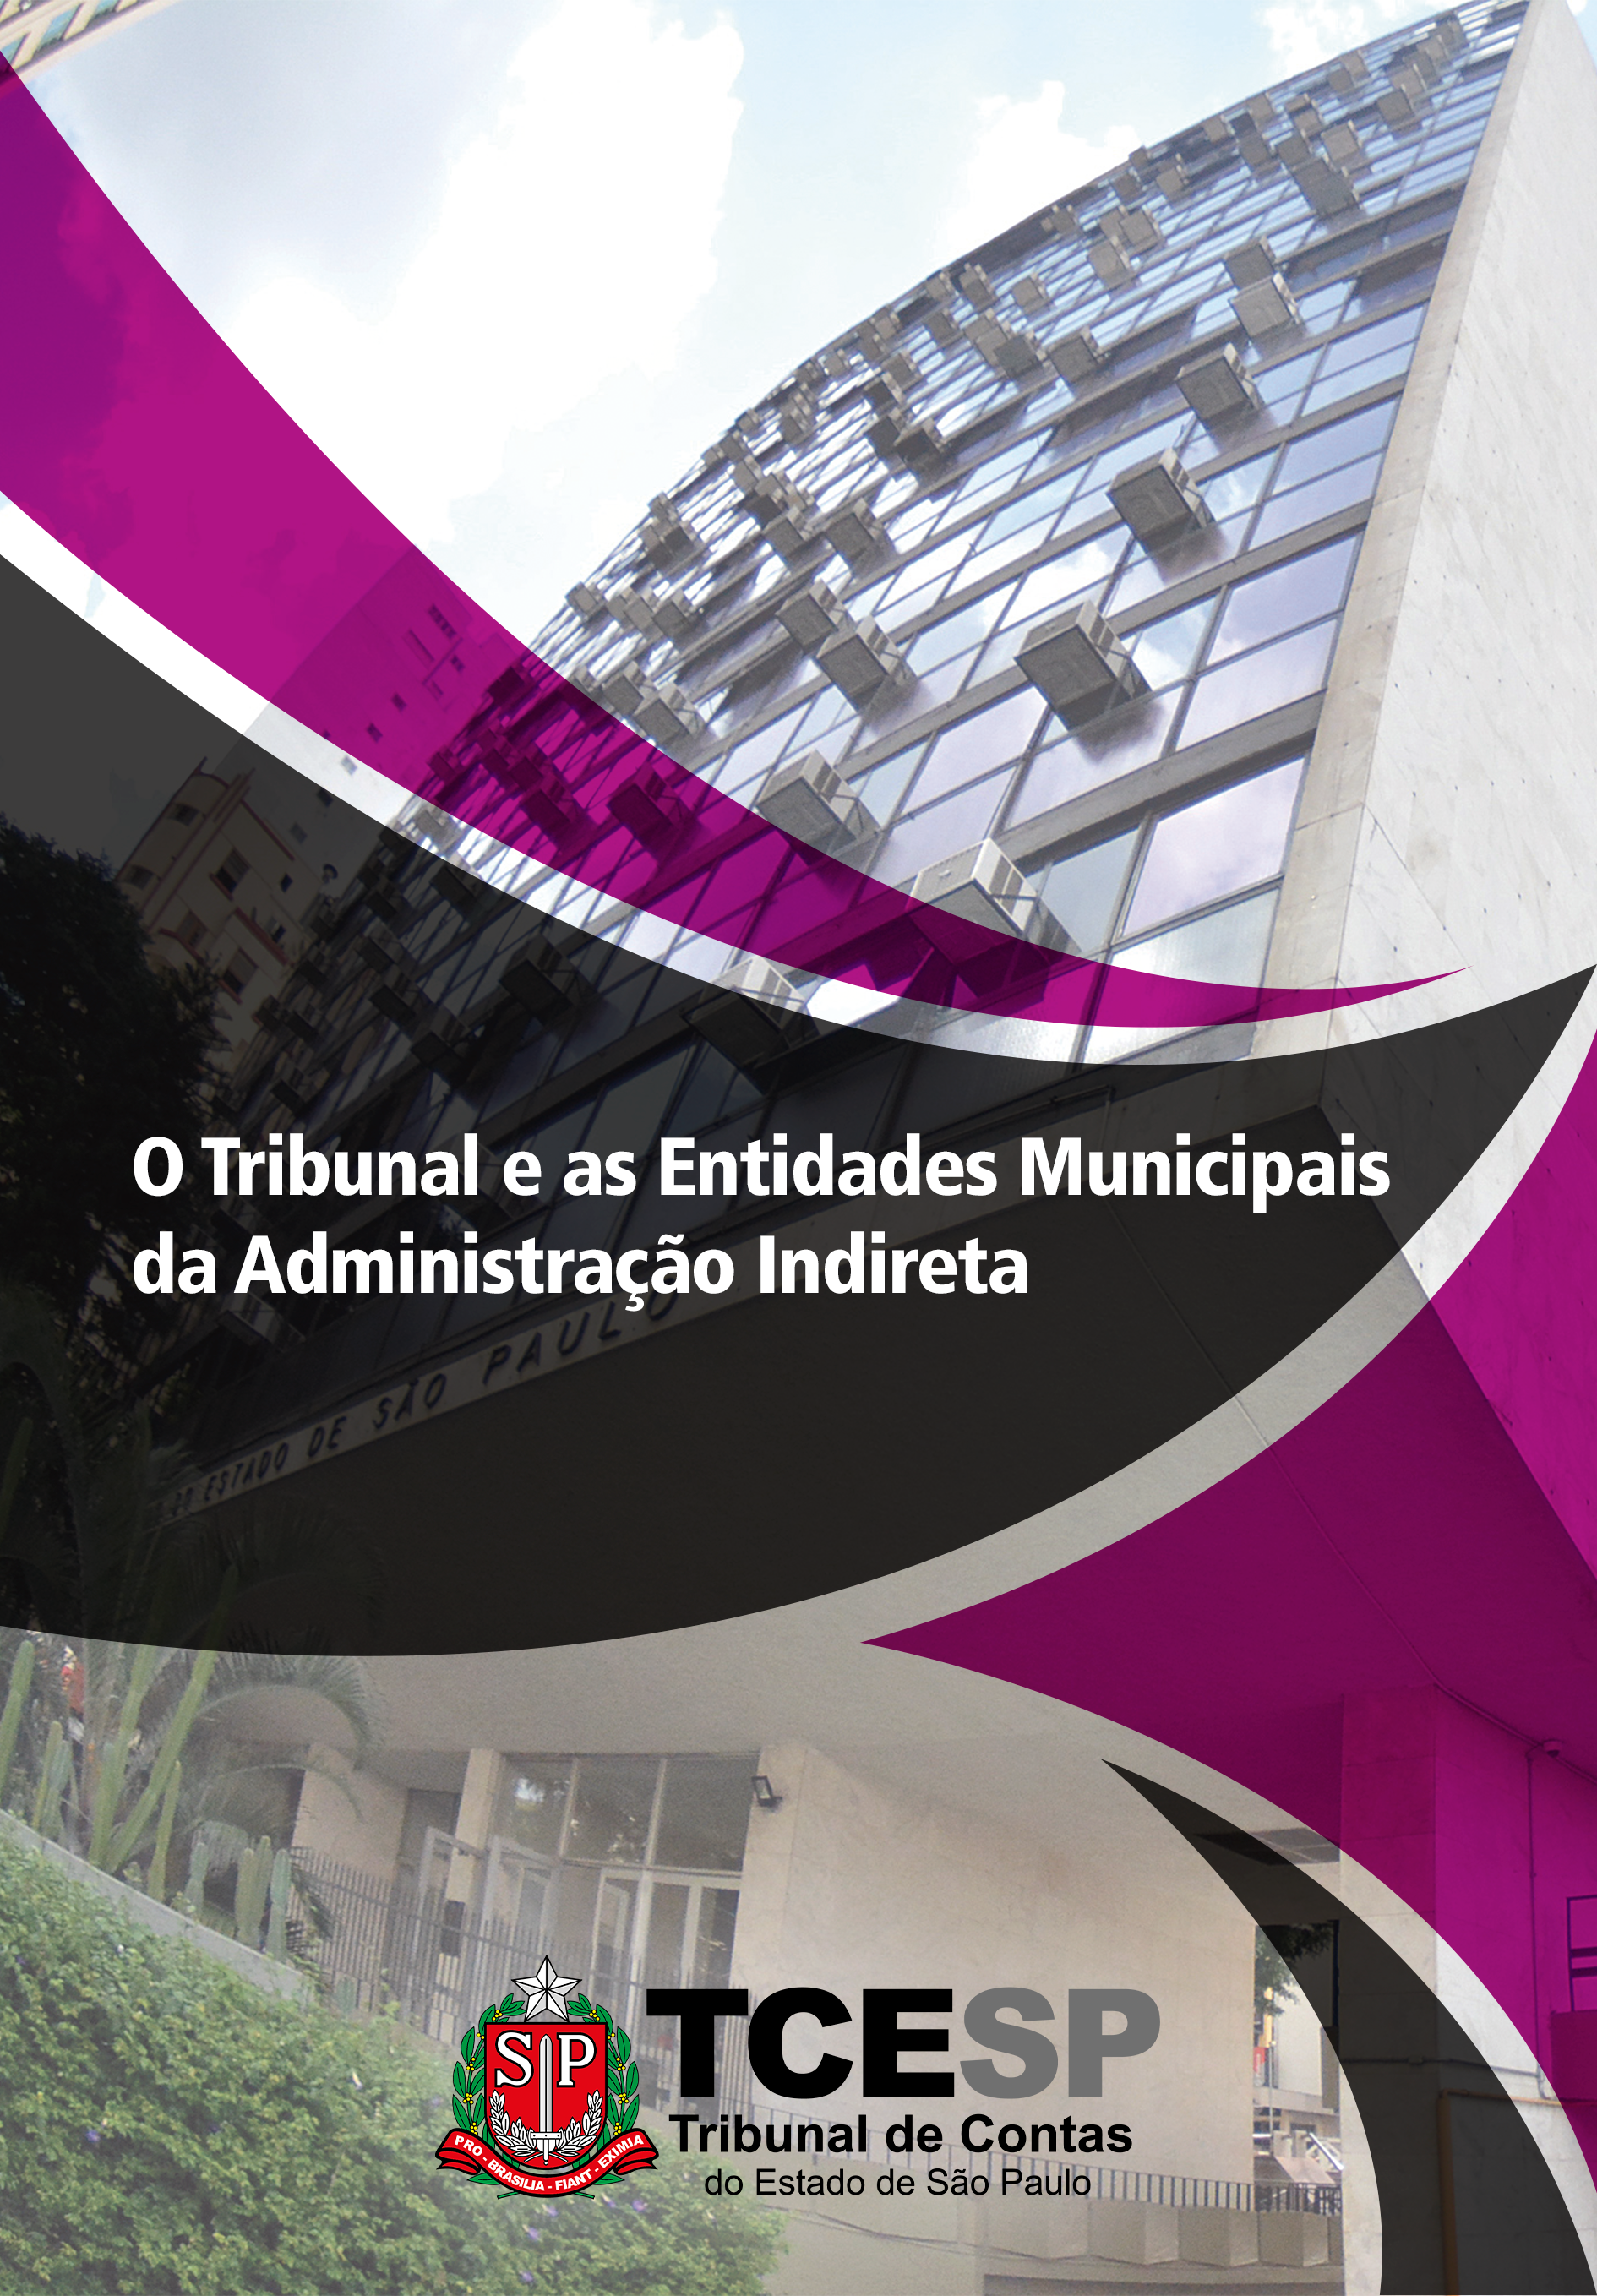 O Tribunal e as Entidades Municipais da Administração Indireta